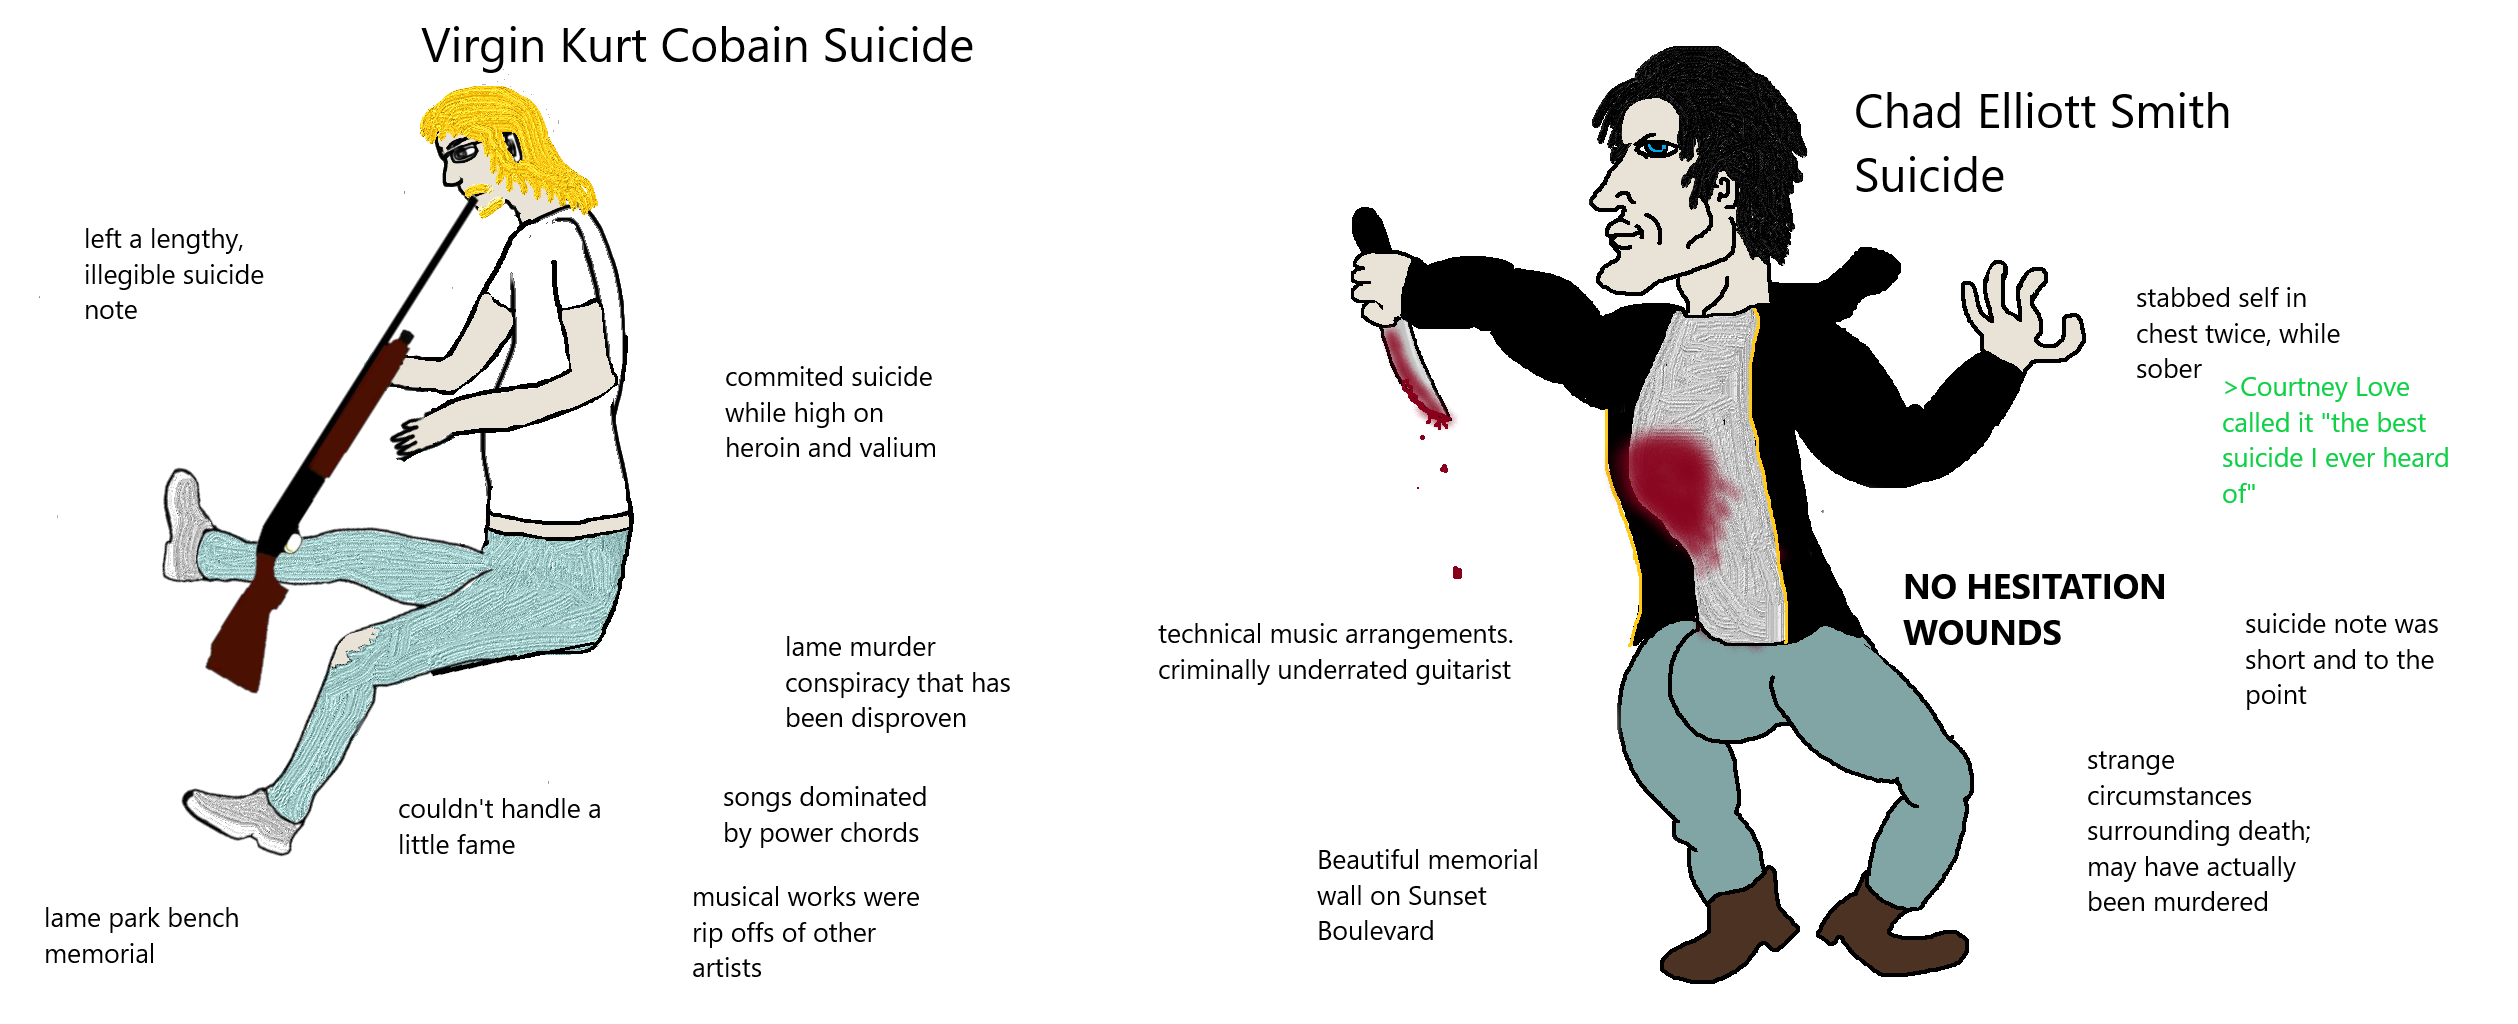 Chad vs Virgin Suicide